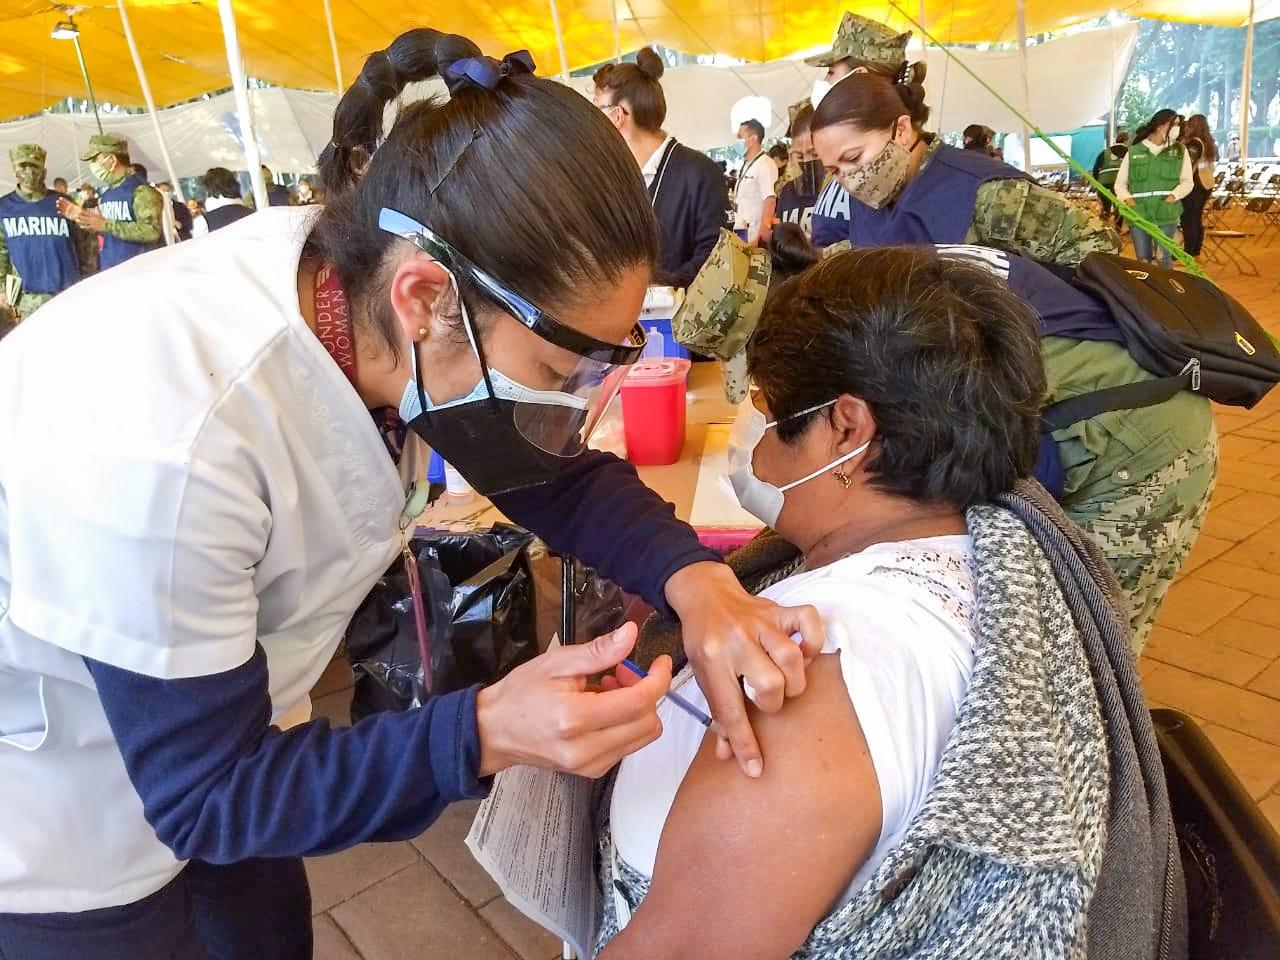 IP echará la mano para vacunación de adultos mayores en Toluca